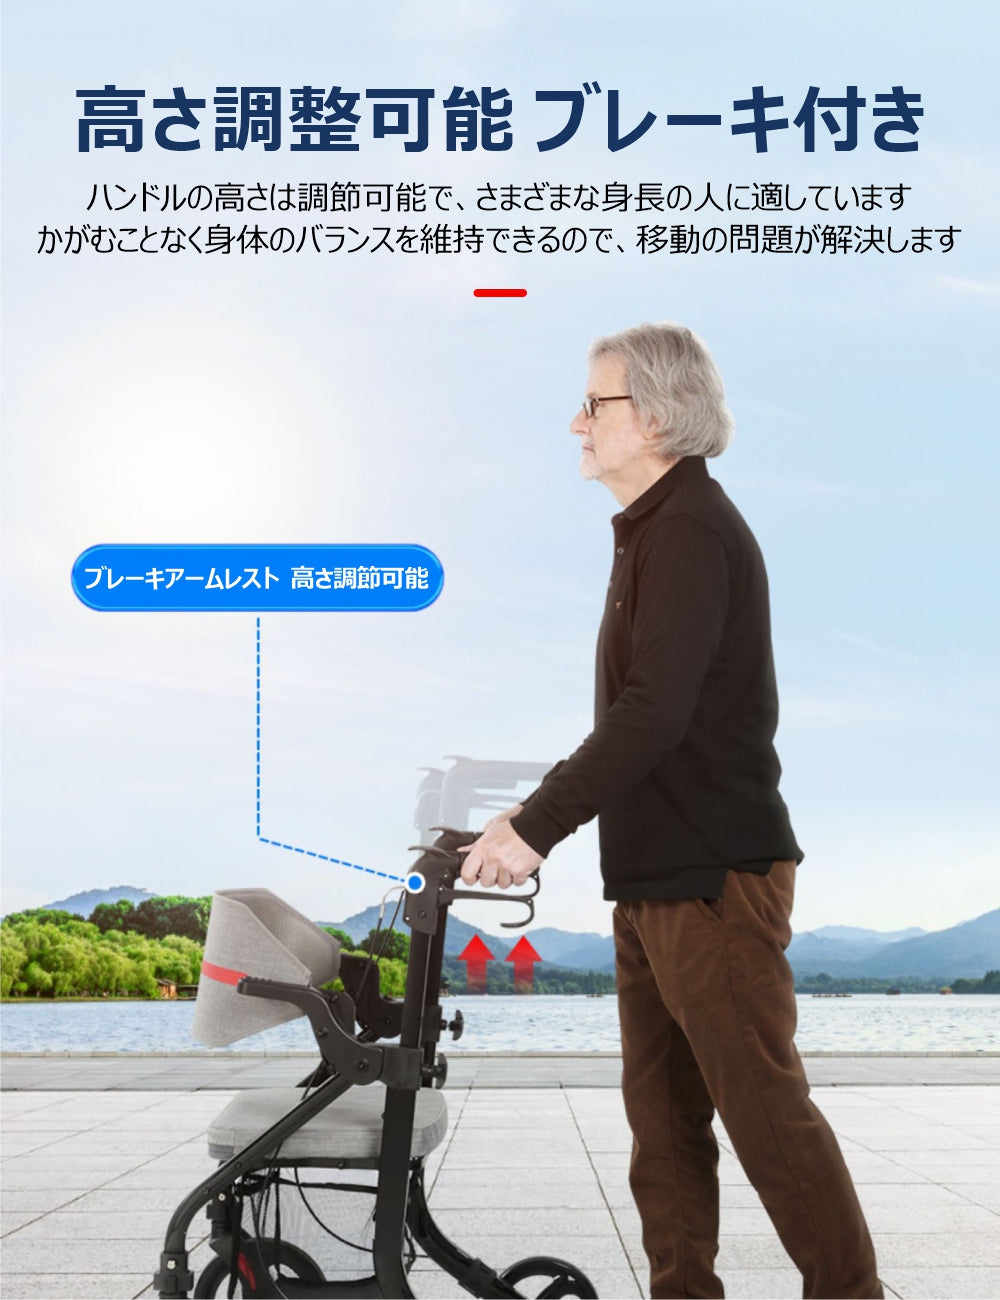 Care-Parents シルバーカー 多機能 手押し車 (CP-9269) – care-parents